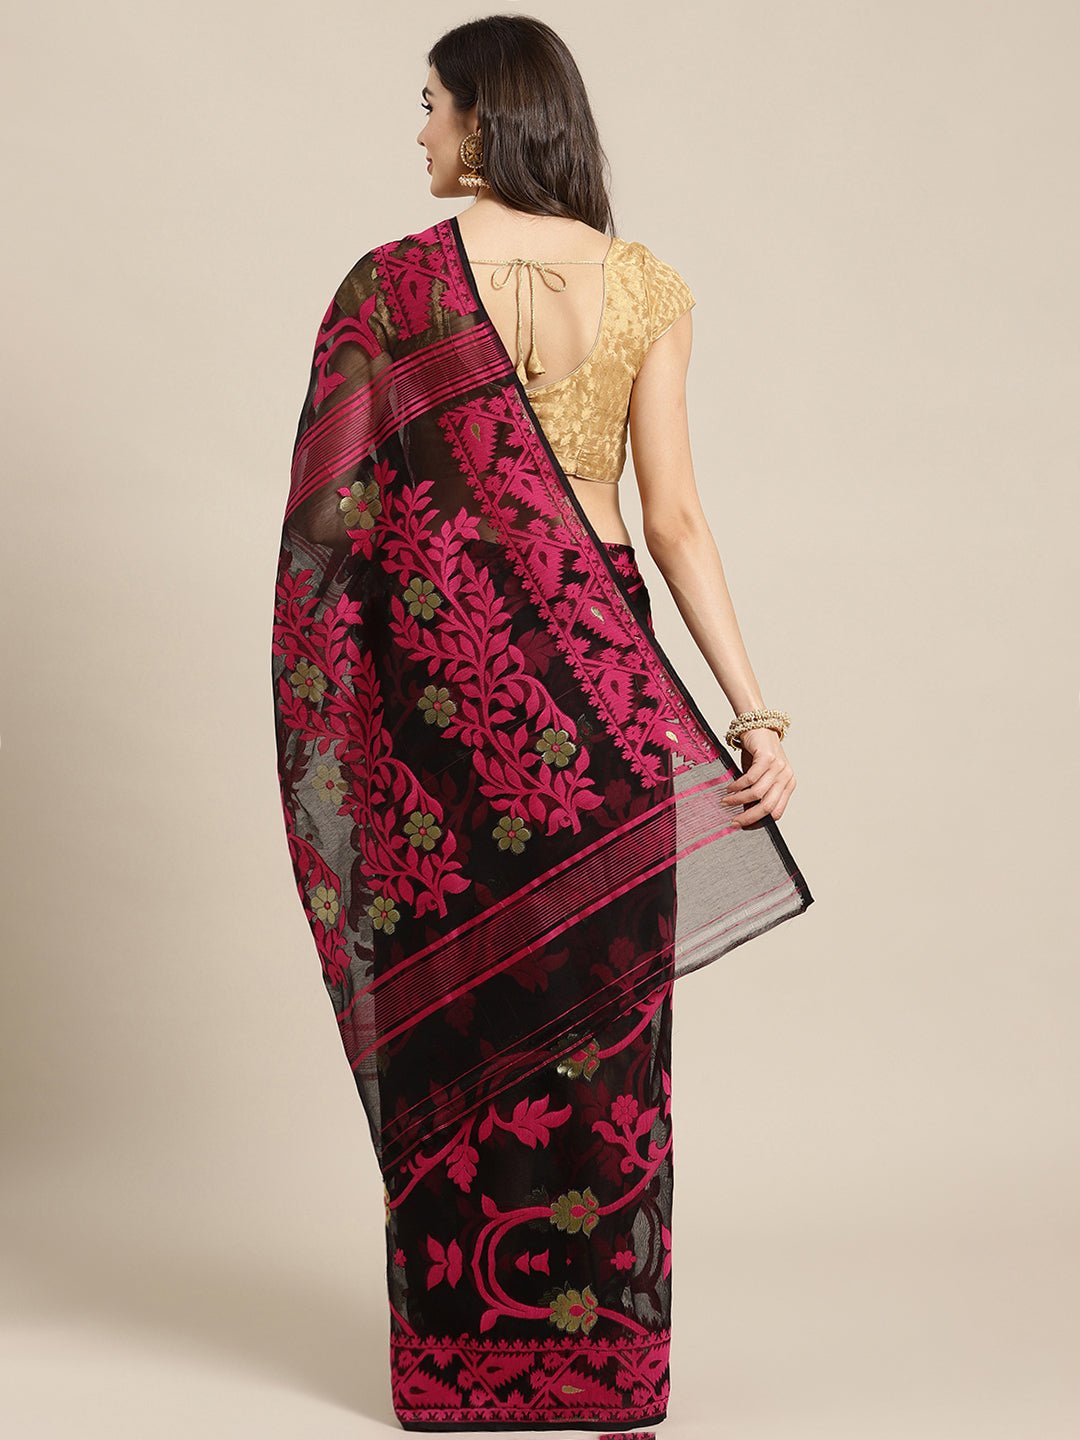 Black and Gold, Kalakari India Jamdani Silk Cotton Woven Design Saree without blouse CHBHSA0037 - Kalakari India